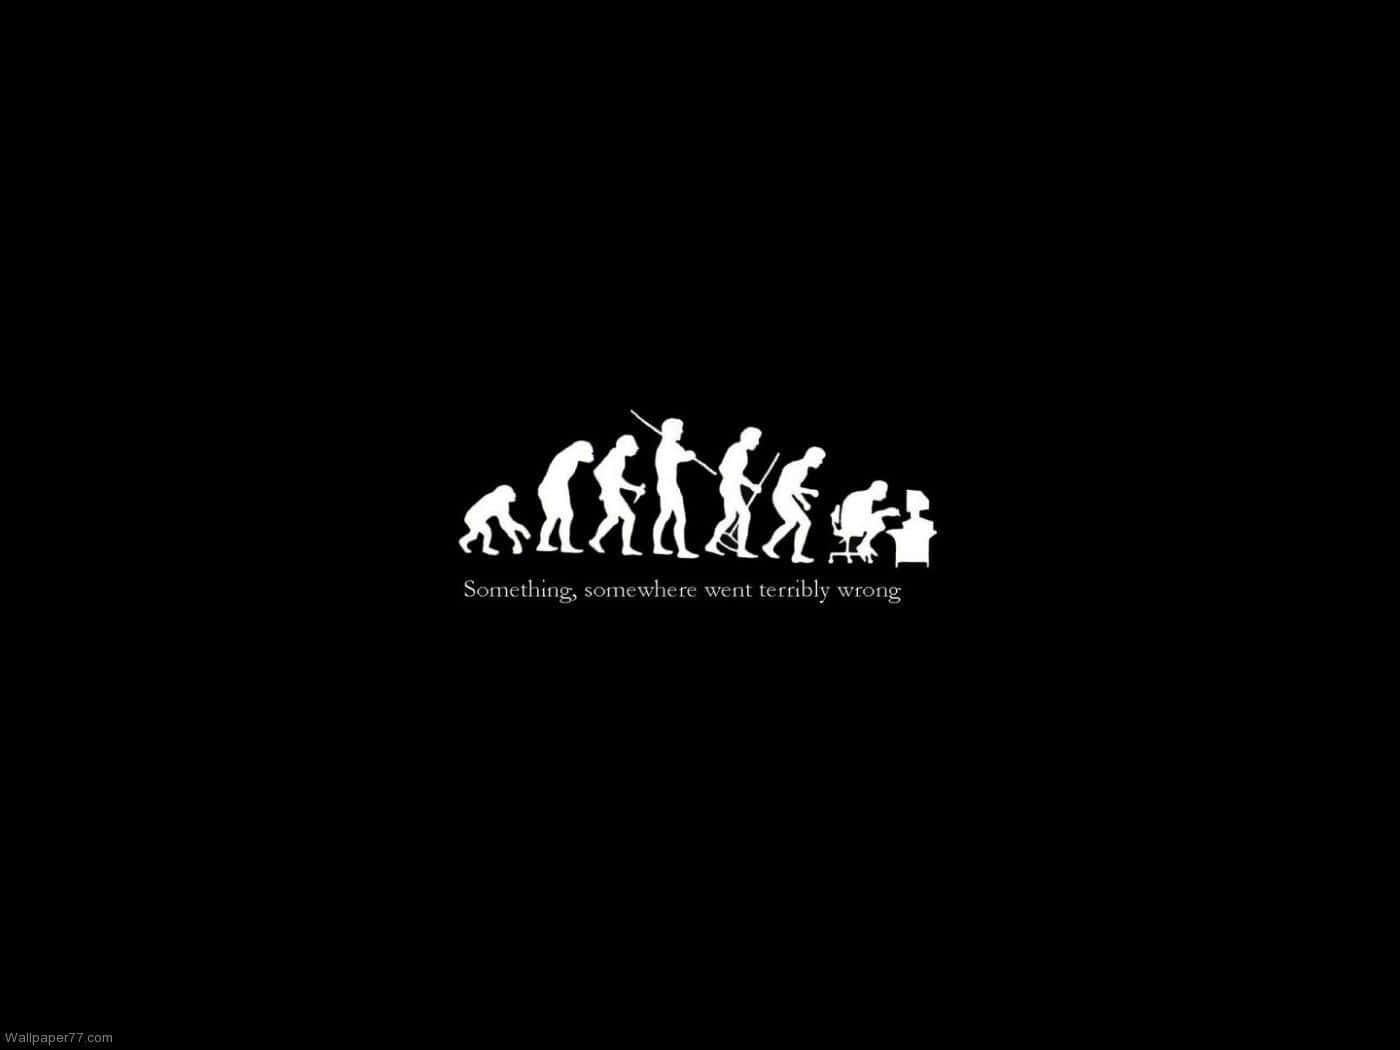 Sfondoevoluzione Dell'uomo, In Bianco E Nero, Evoluzione Dell'uomo, Evoluzione Dell'uomo, Evoluzione Dell'uomo, Evoluzione Dell'uomo, Evoluzione Dell'uomo, Evoluzione Dell'uomo Sfondo